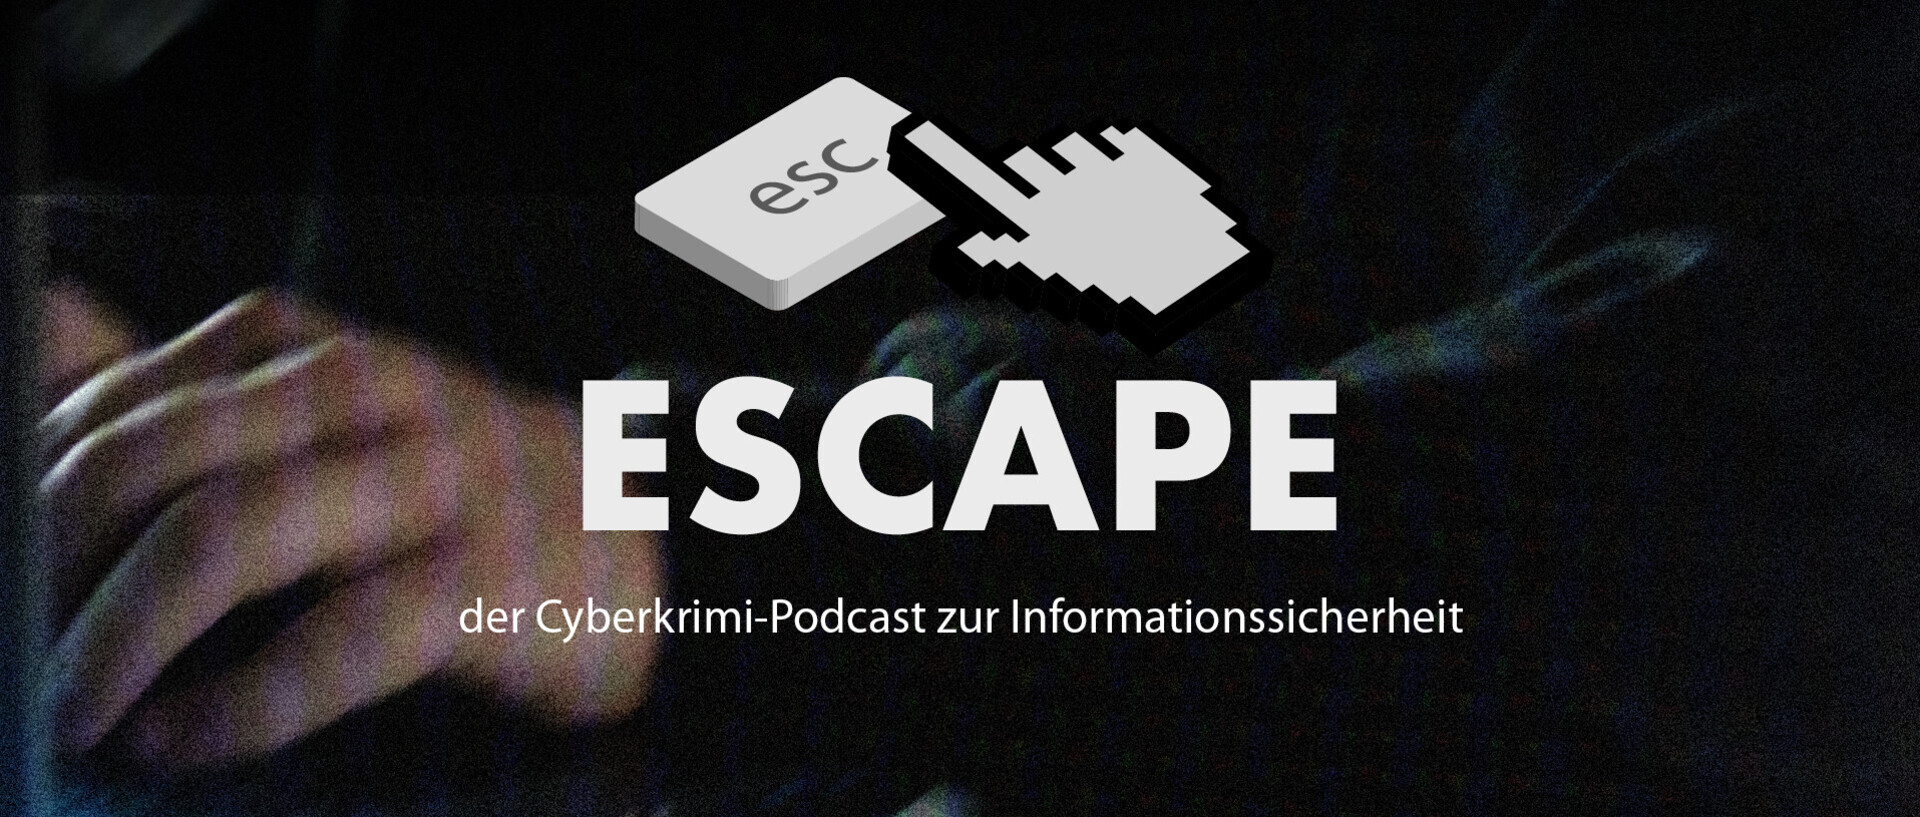 Escape der Cyberkrimi-Podcast zur Informationssicherheit